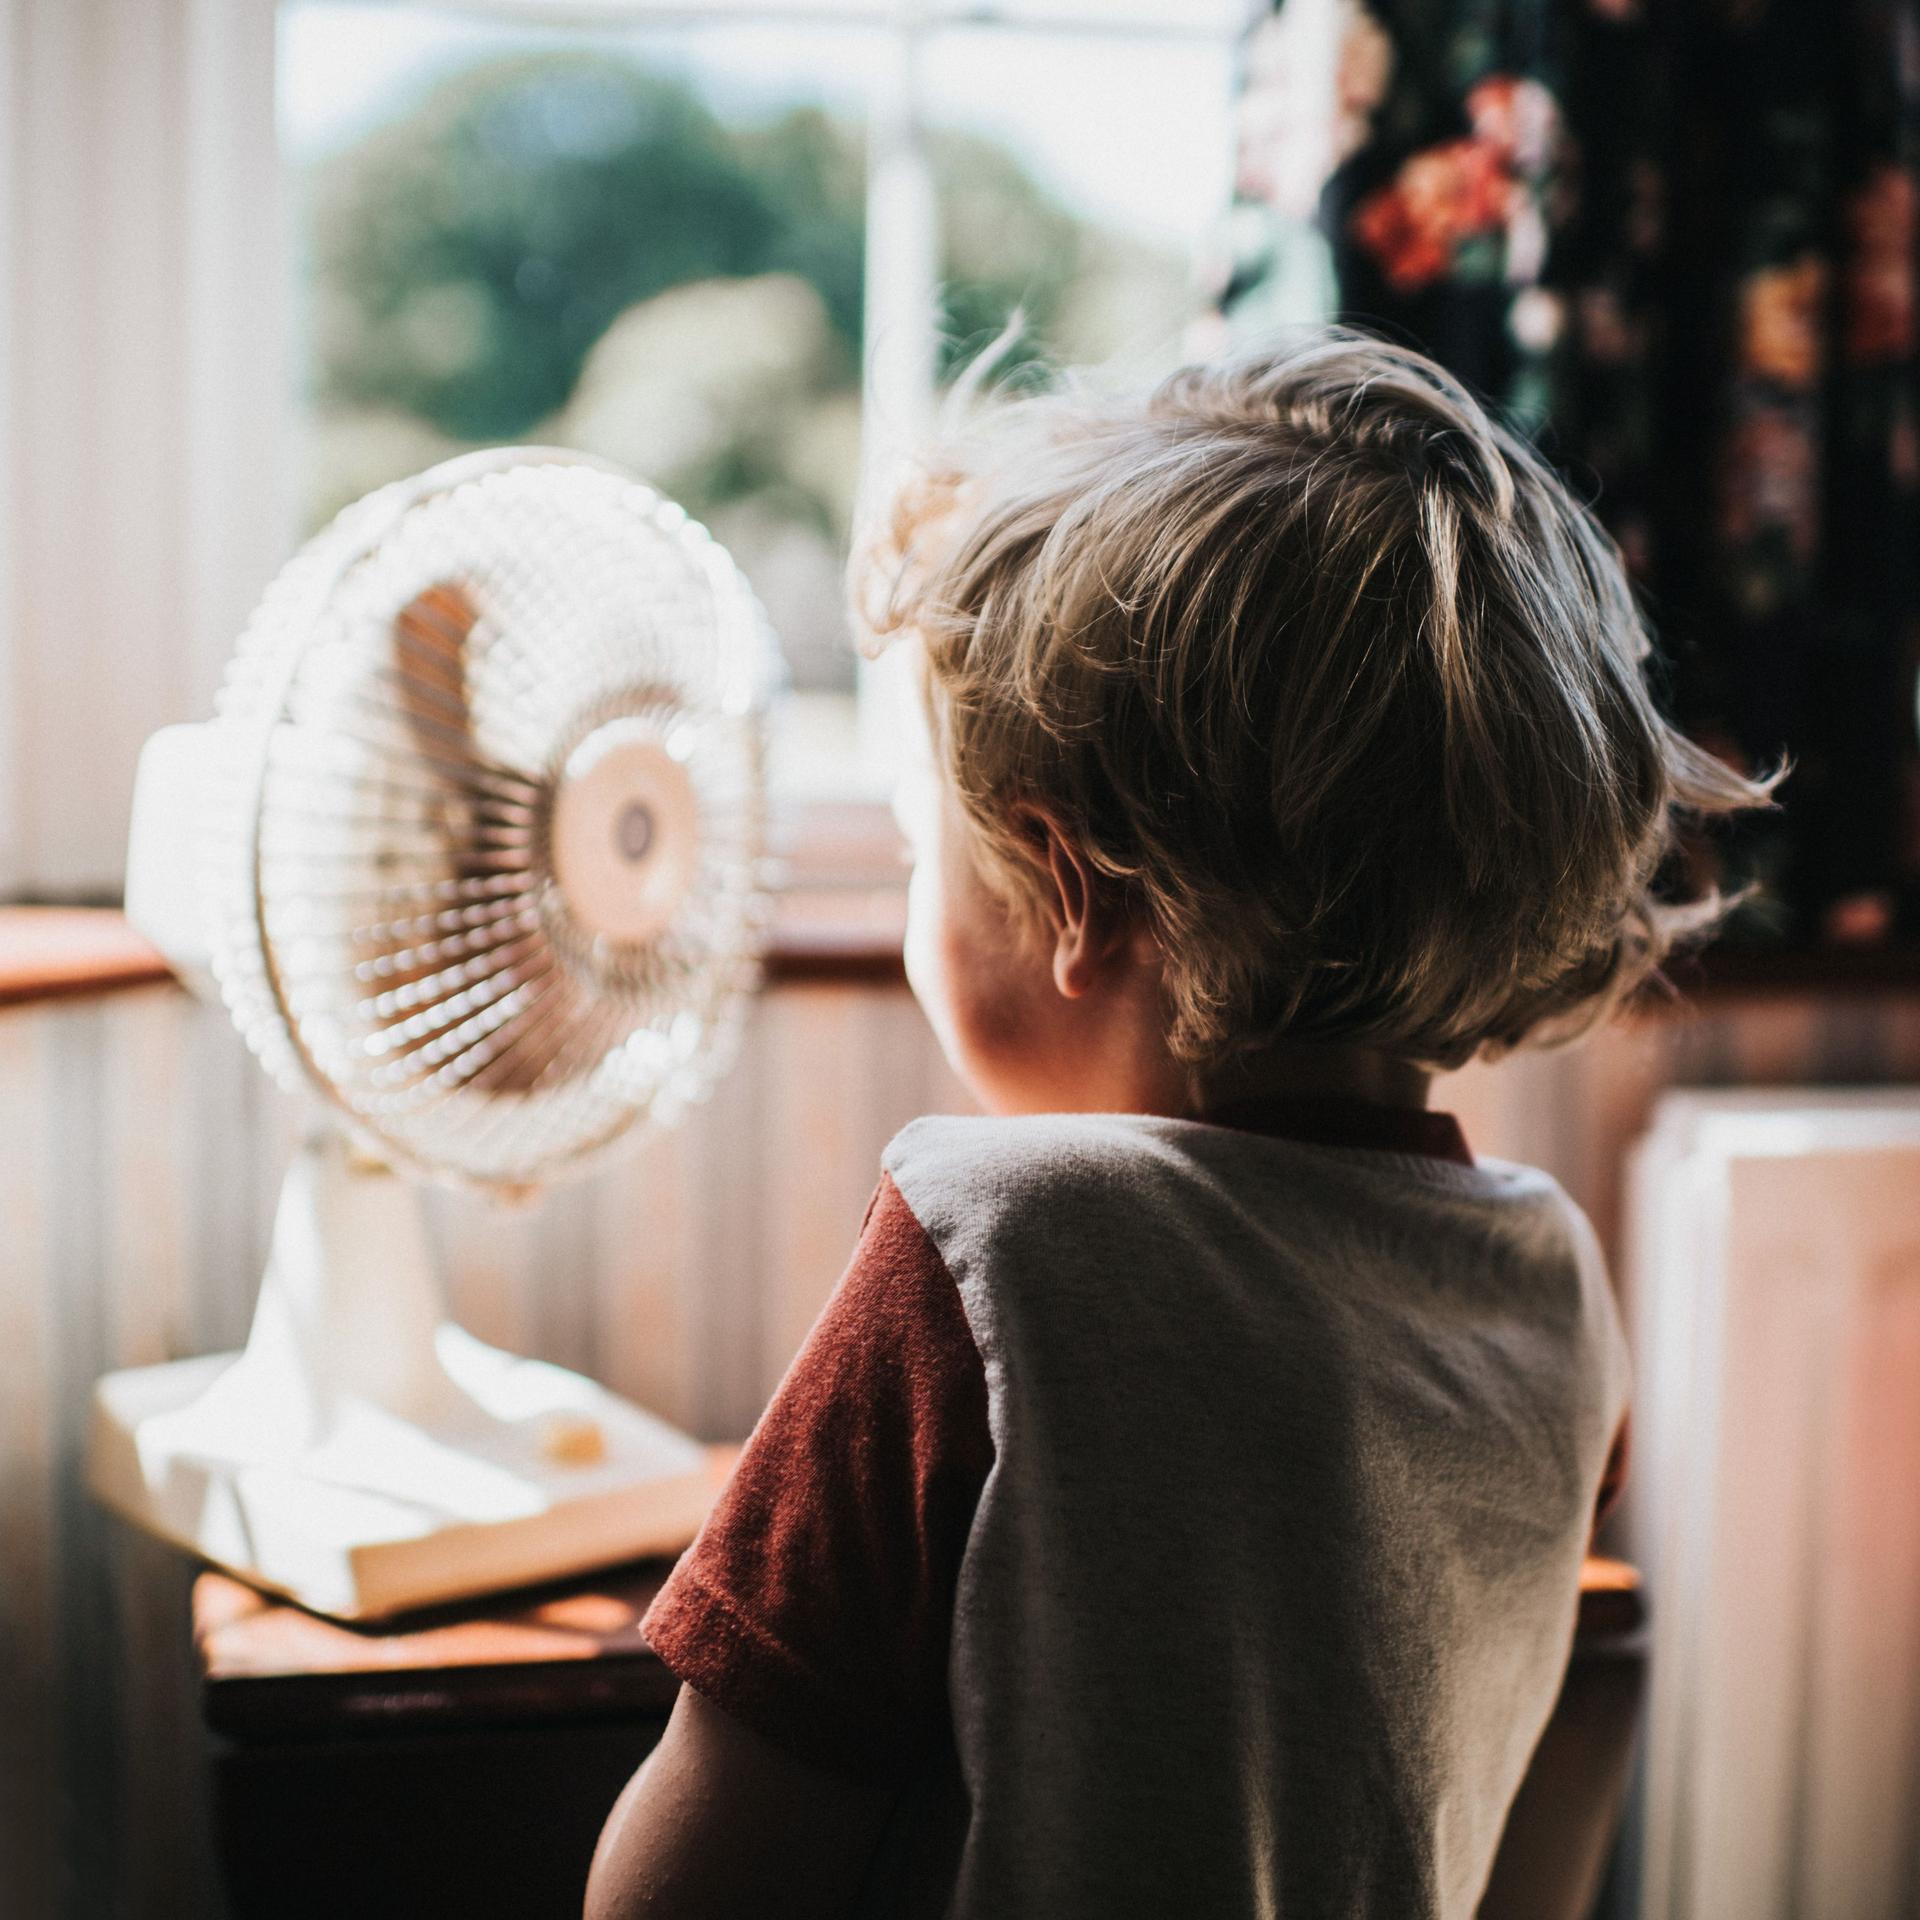 Ein Kleinkind steht vor einem kleinen Ventilator. Die Haare wehen dabei im Wind. Im Hintergrund sind Fenster zu sehen.